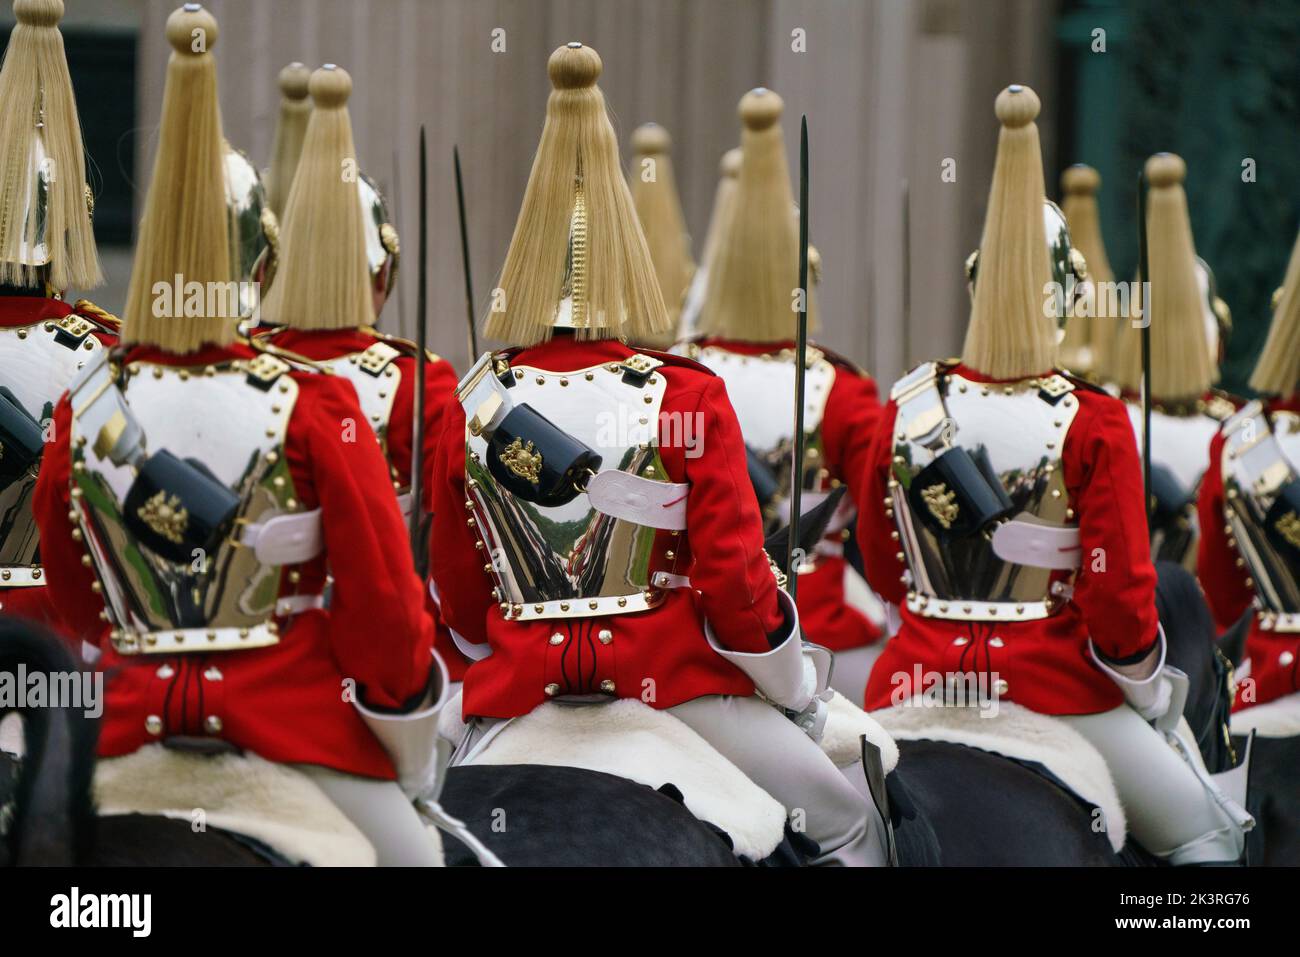 LONDRES - SEPTEMBRE 19 : la cavalerie de la maison est composée des deux régiments les plus hauts de l'armée britannique, les gardes de vie et les Bleus et Royals. La cavalerie fait partie de la Division des ménages et est la garde du corps officielle du roi. Au funérailles d'État de la reine Élisabeth II sur 19 septembre 2022. Photo: David Levenson/Alay Banque D'Images